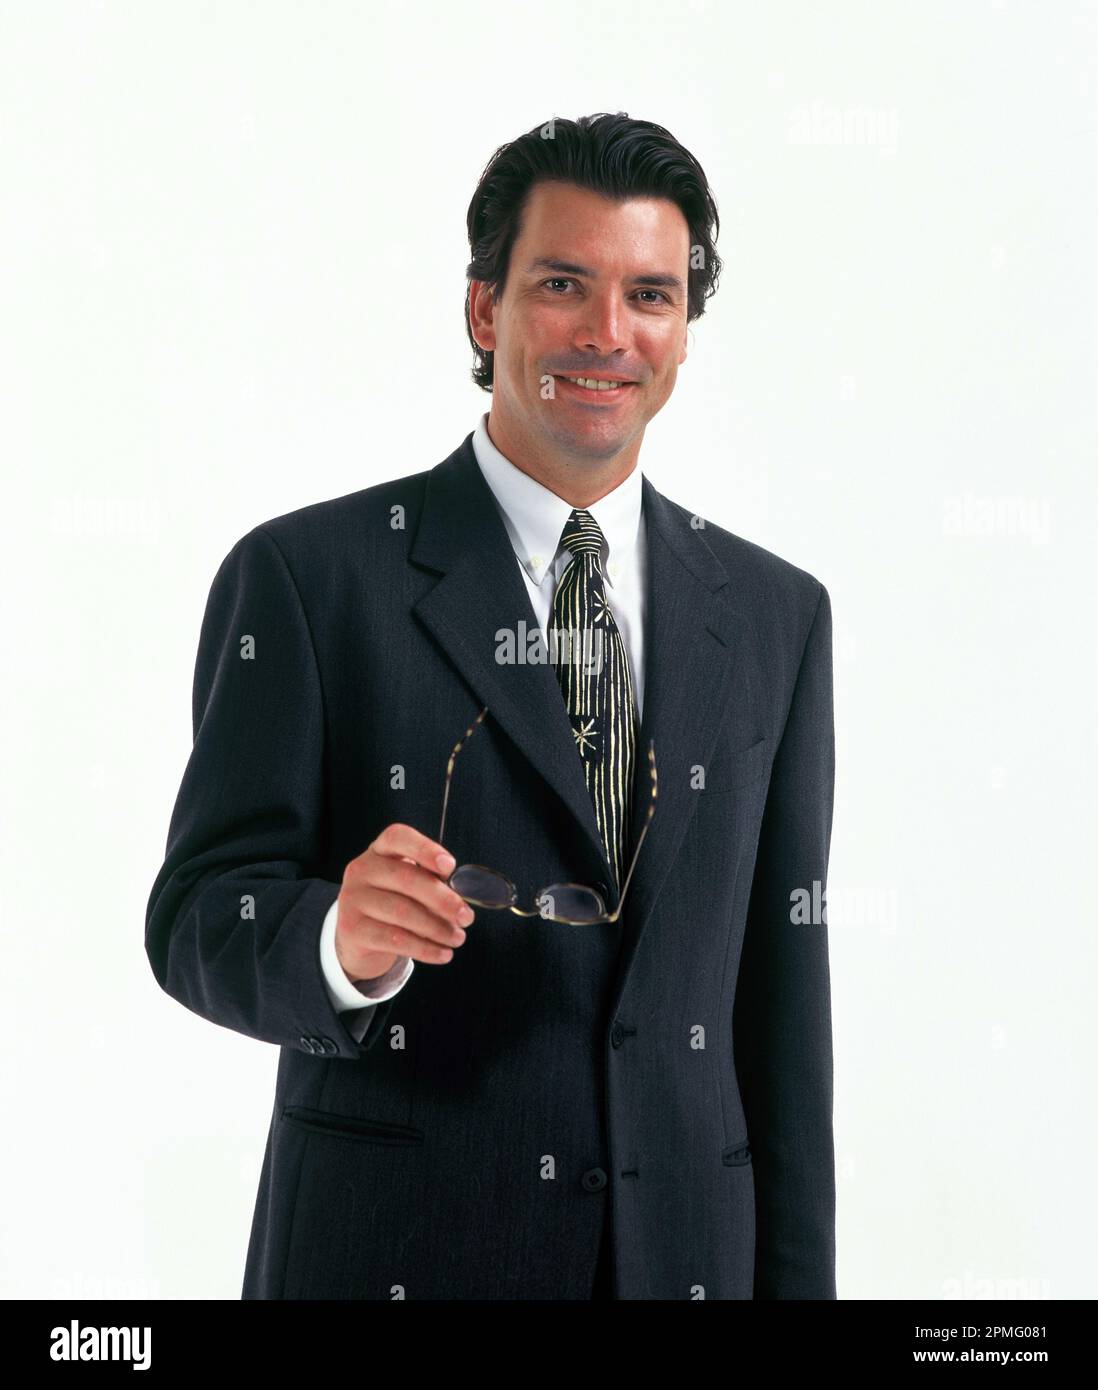 Geschäftlich. Studiobild eines jungen Mannes im Anzug. Stockfoto